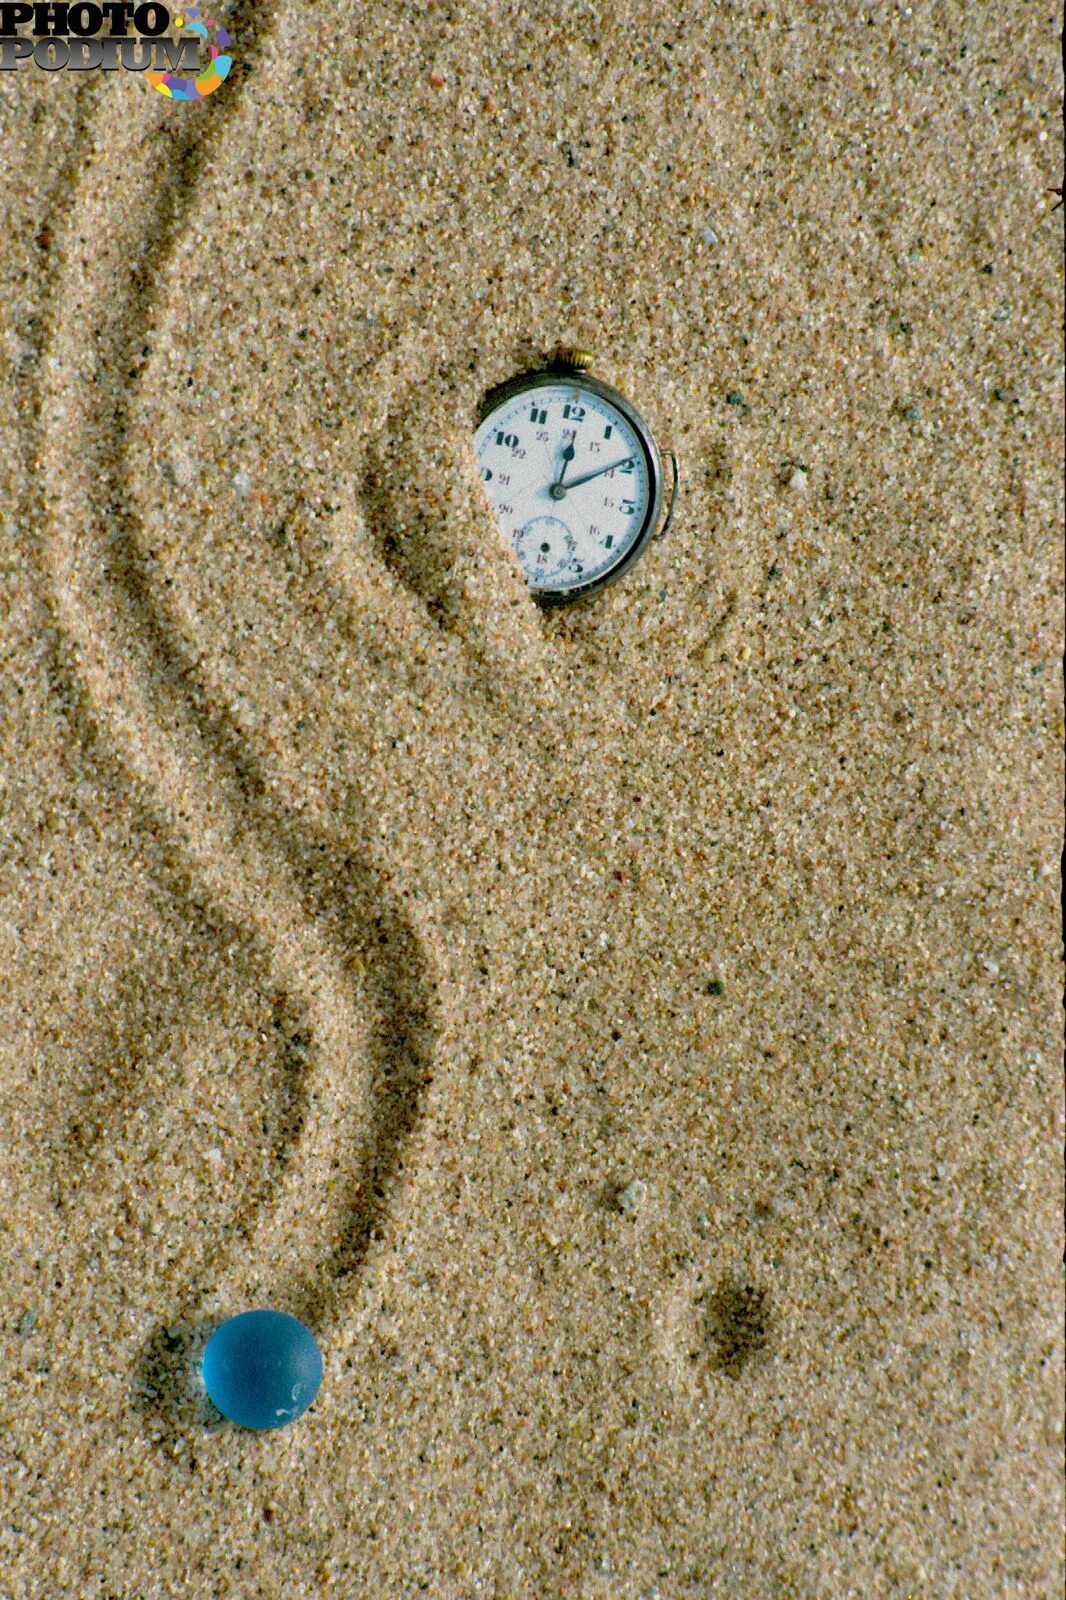 Шаров след в след. Часы в песке. Доска с песком часы. Песчаные часы в сфере. Часы с песком и шариком.